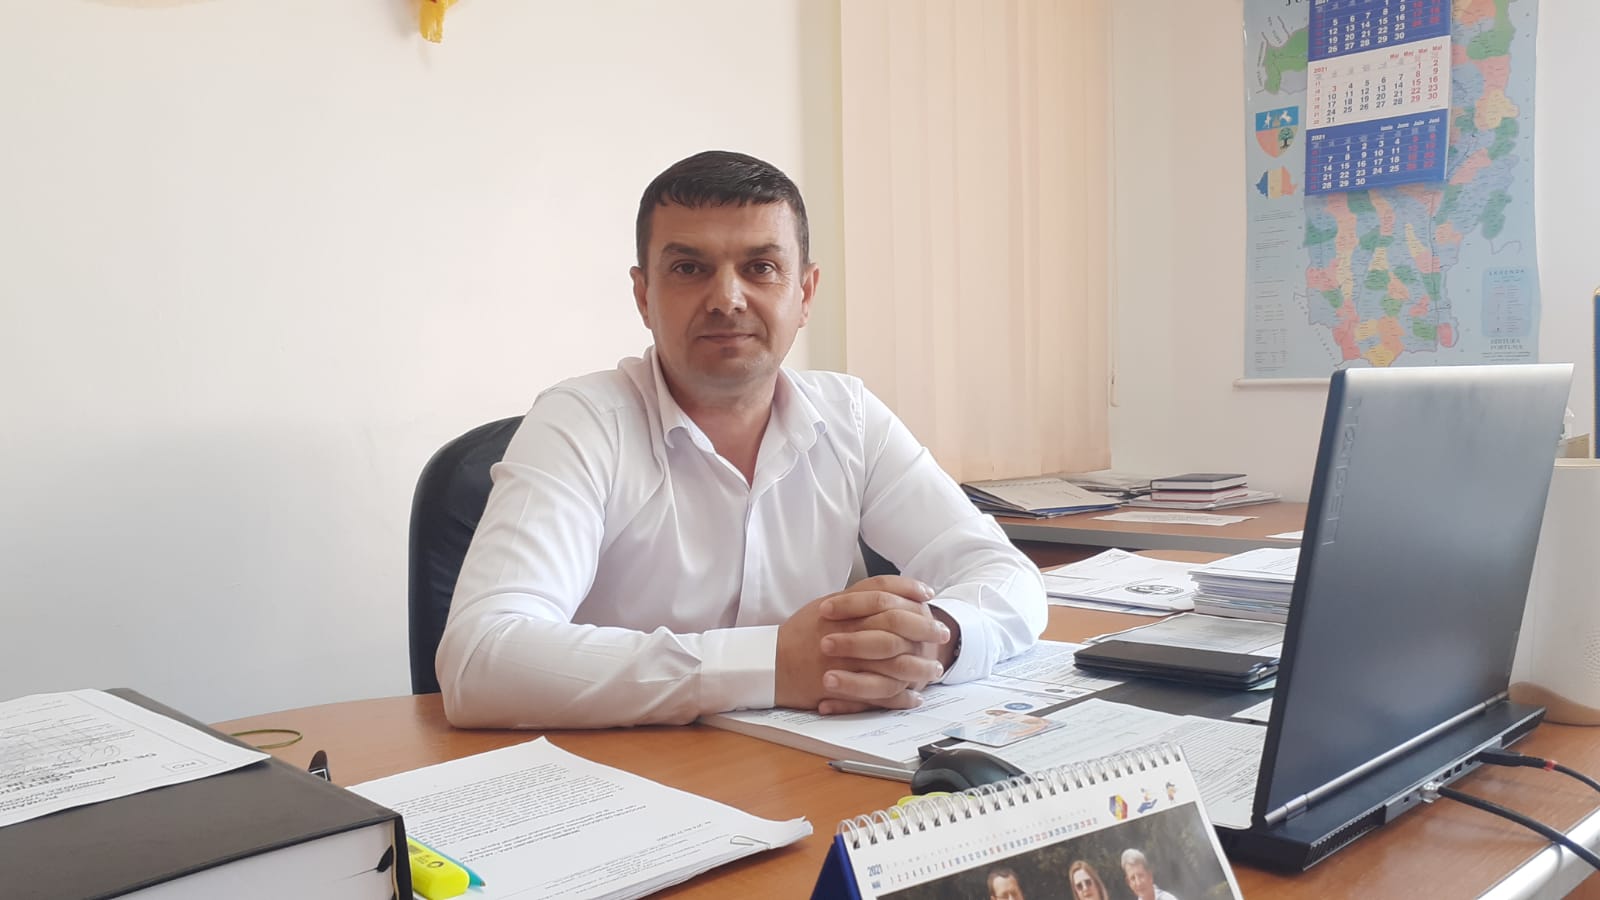 Primarul localităţii Cernişoara, pastorul Dumitru Ciorâcă: „Pe lângă proiectele realizate în anul 2021 am satisfacţia faptului că suntem sănătoşi”